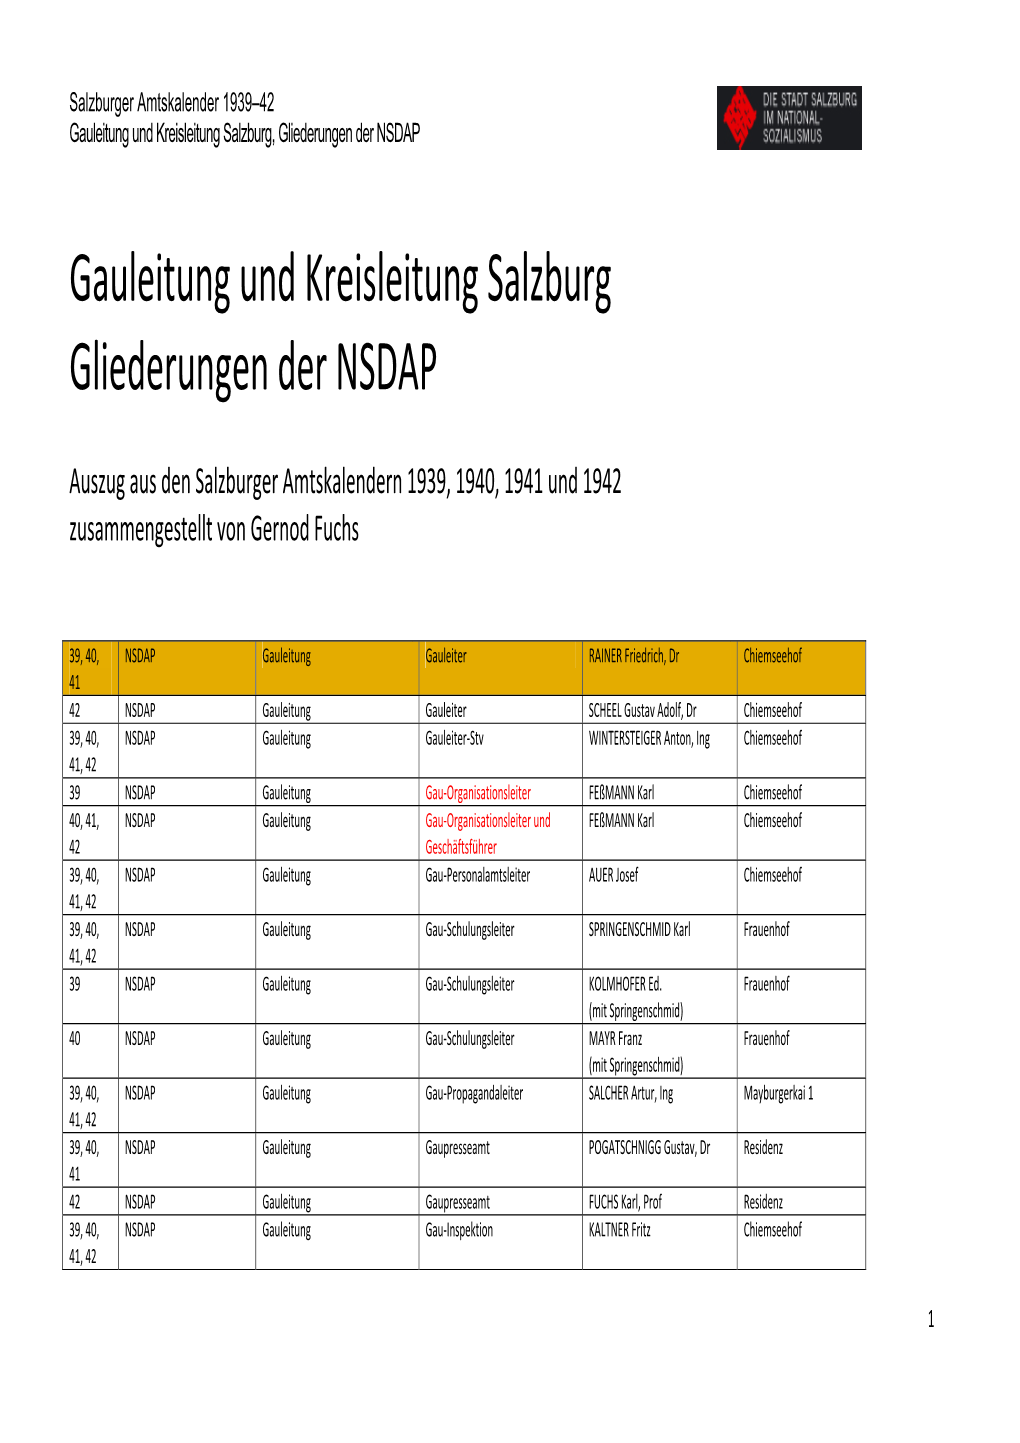 Gauleitung Und Kreisleitung Salzburg Gliederungen Der NSDAP